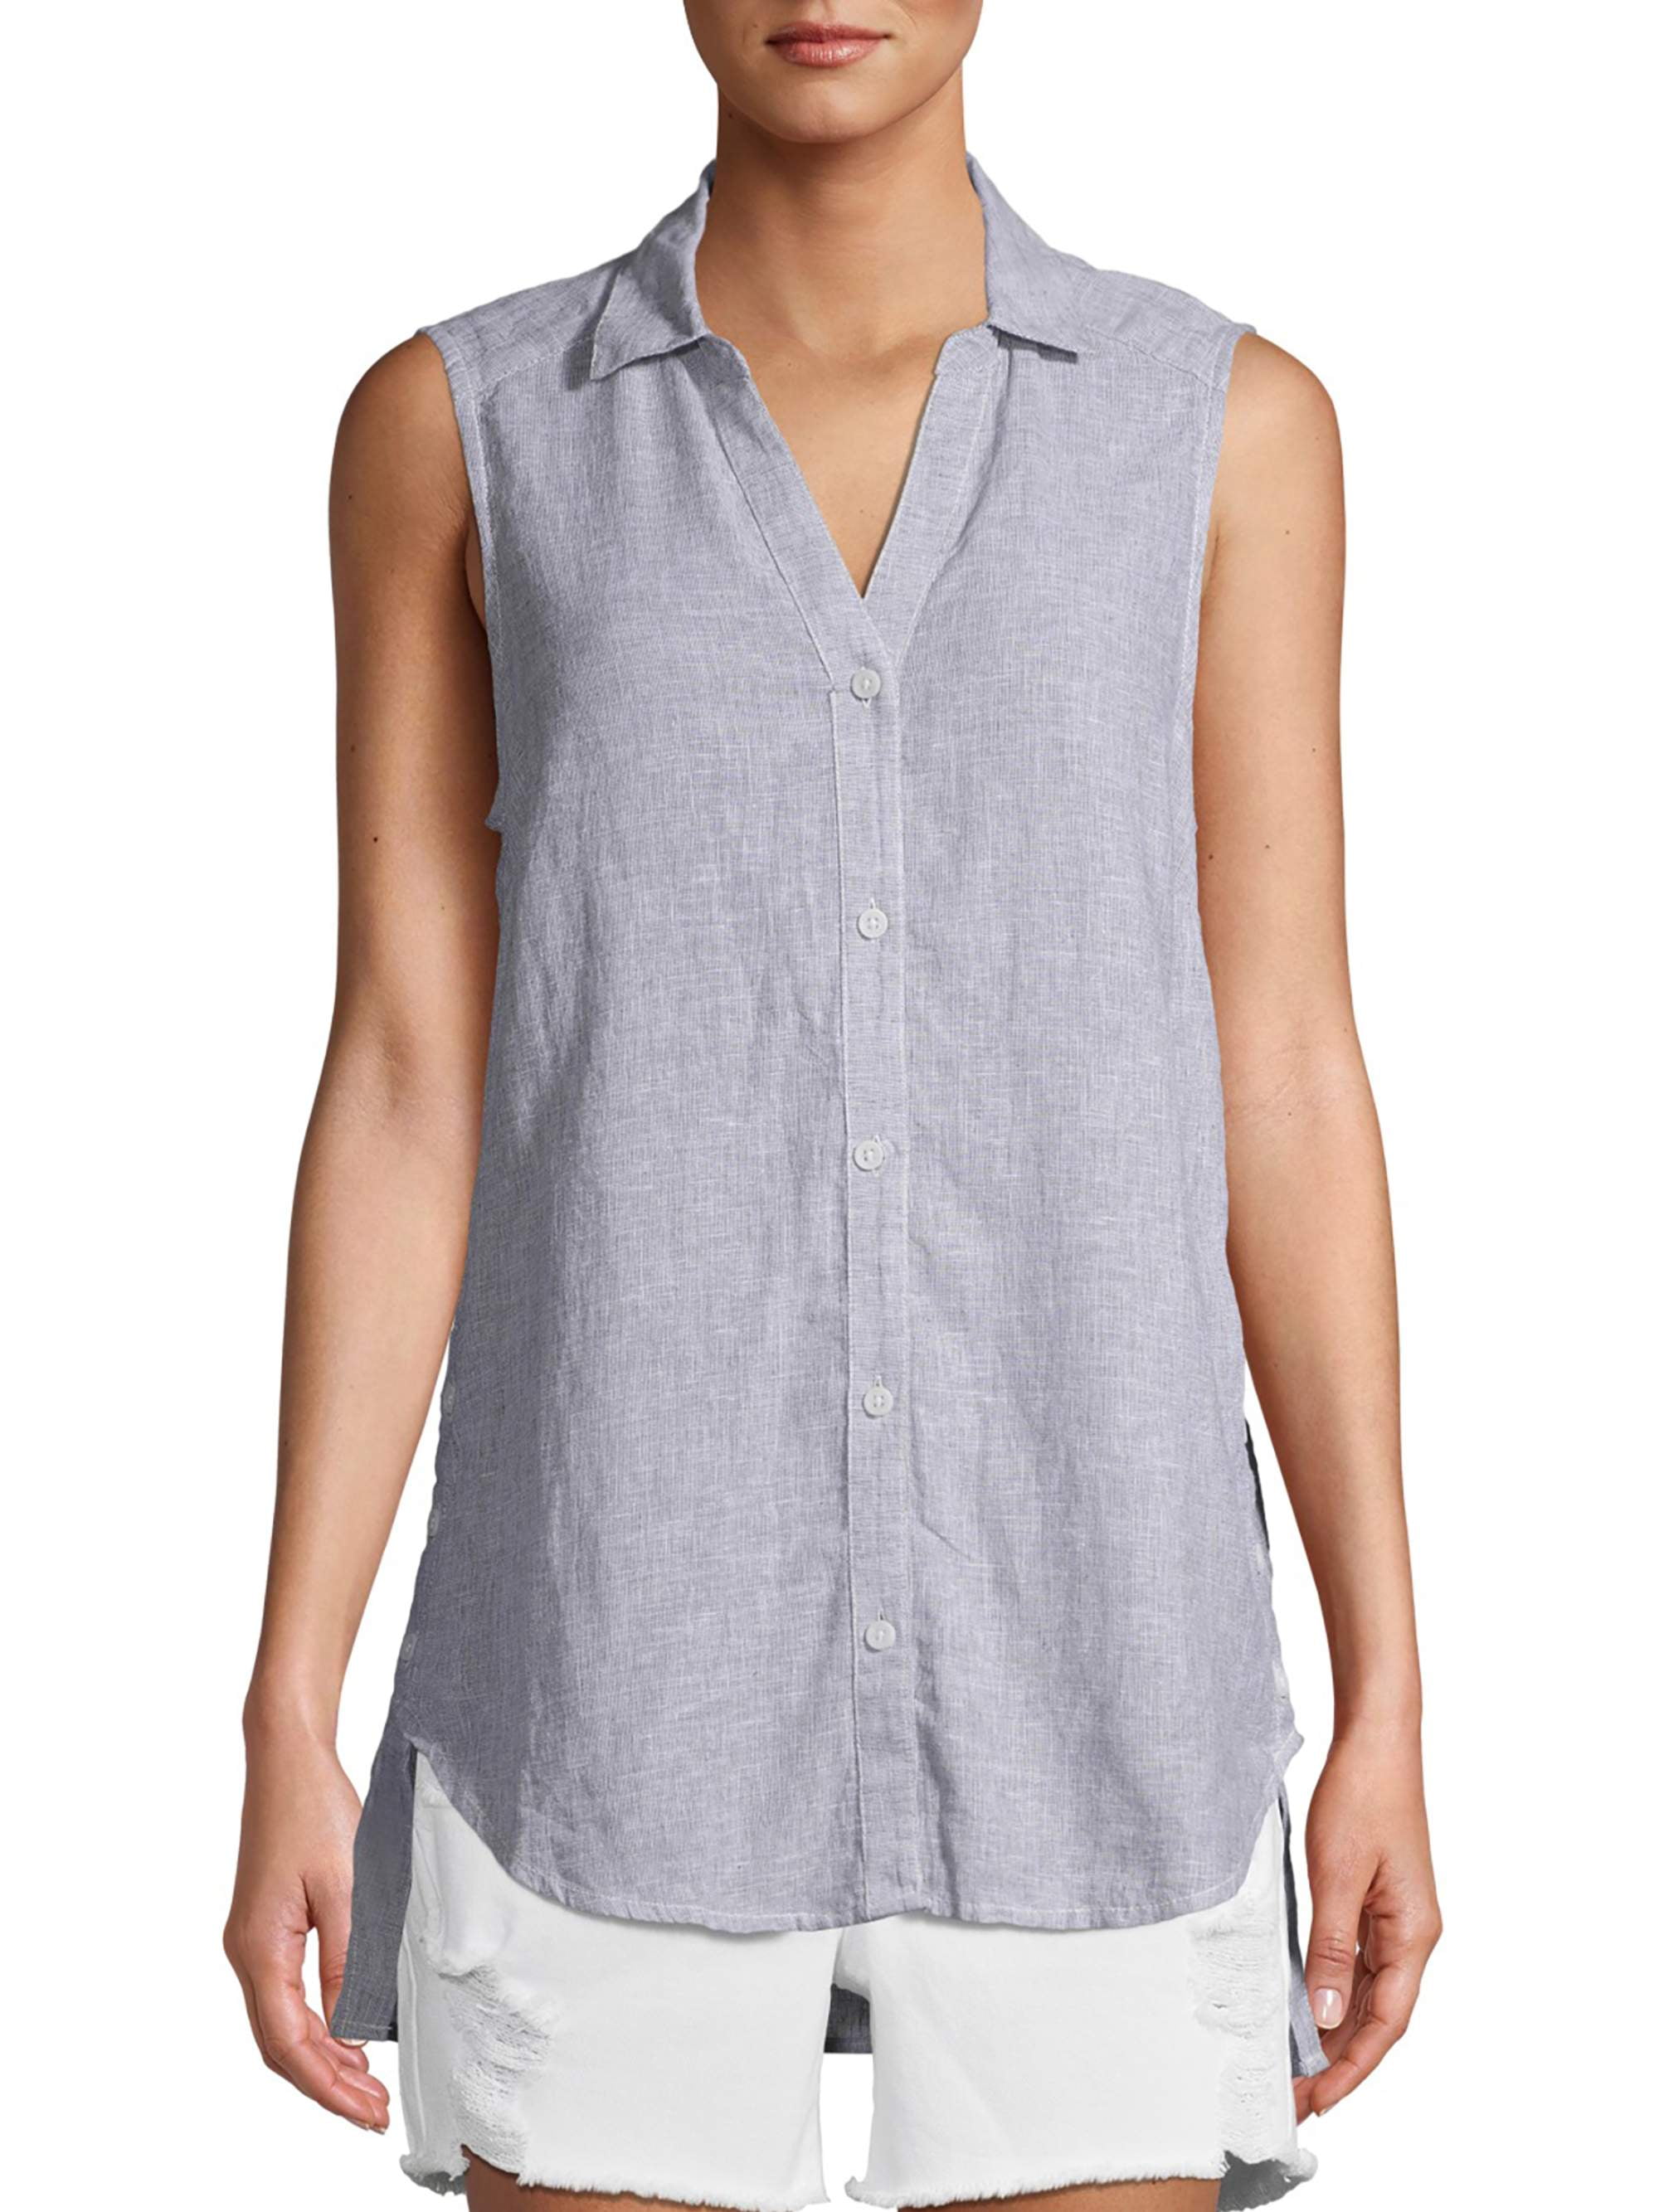 Linen top  Linen blouse  Linen shirt  Sleeveless  linen blouse